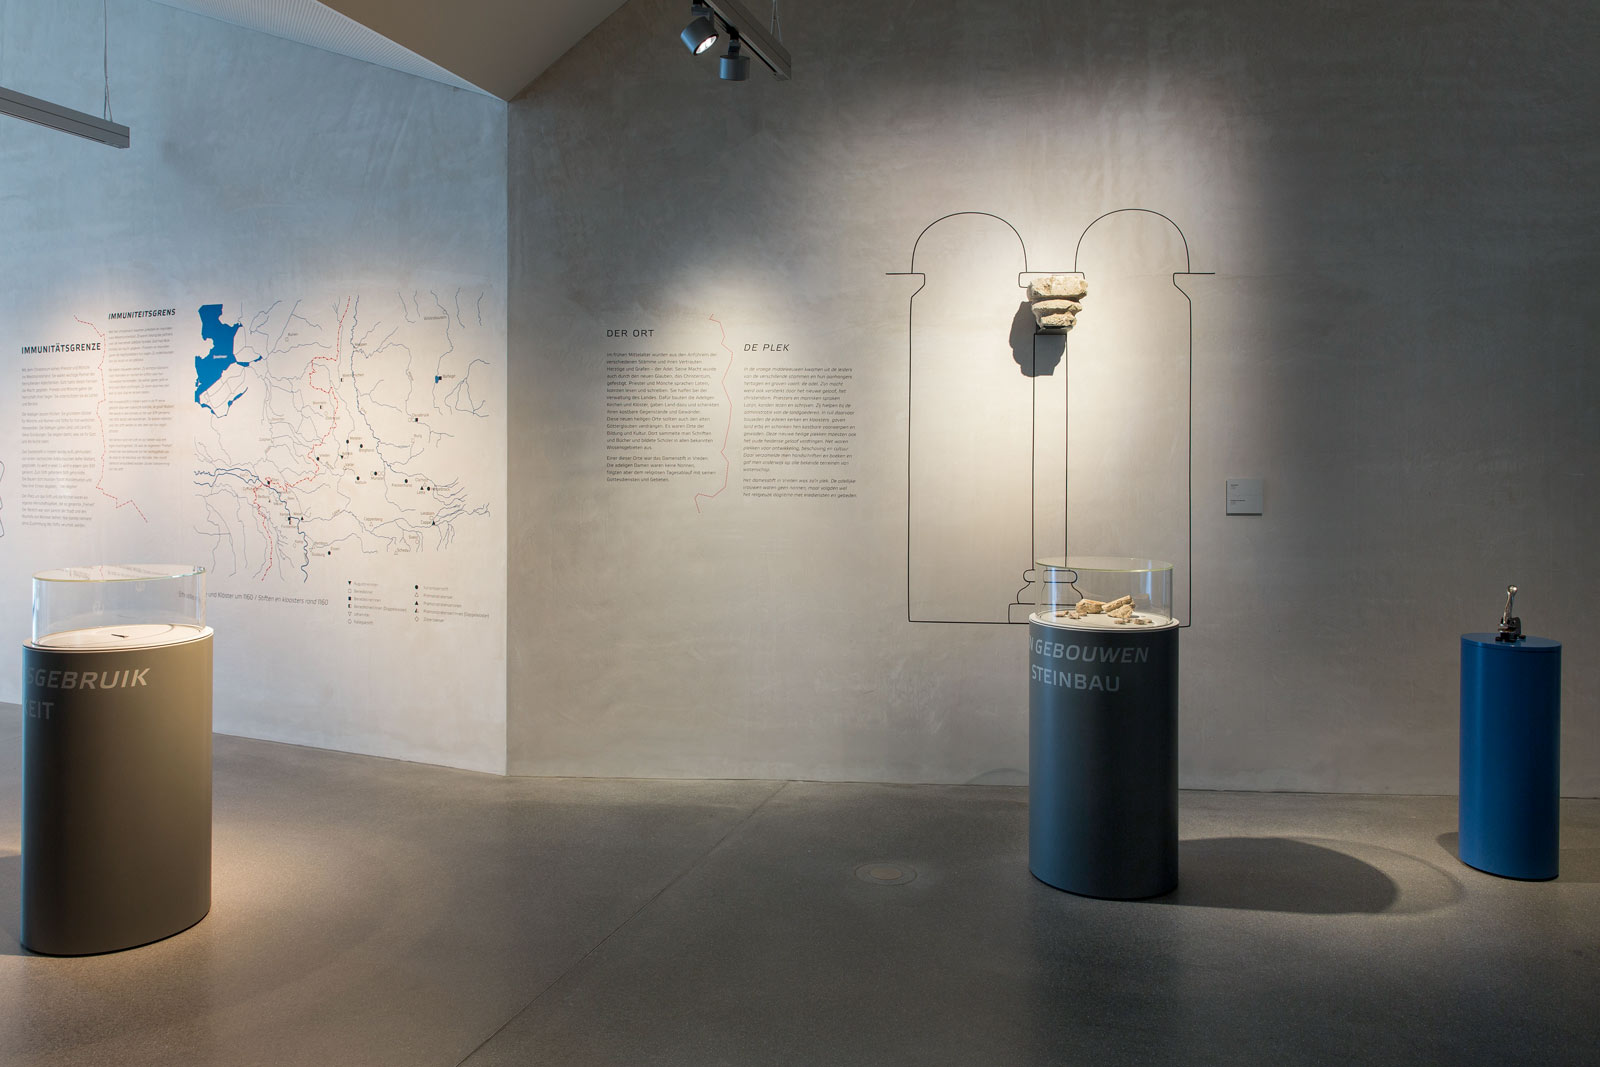 Das Referenzbild für Ausstellungsgestaltung aus der Dauerausstellung Grenze zeigt eine Rauminszenierung.